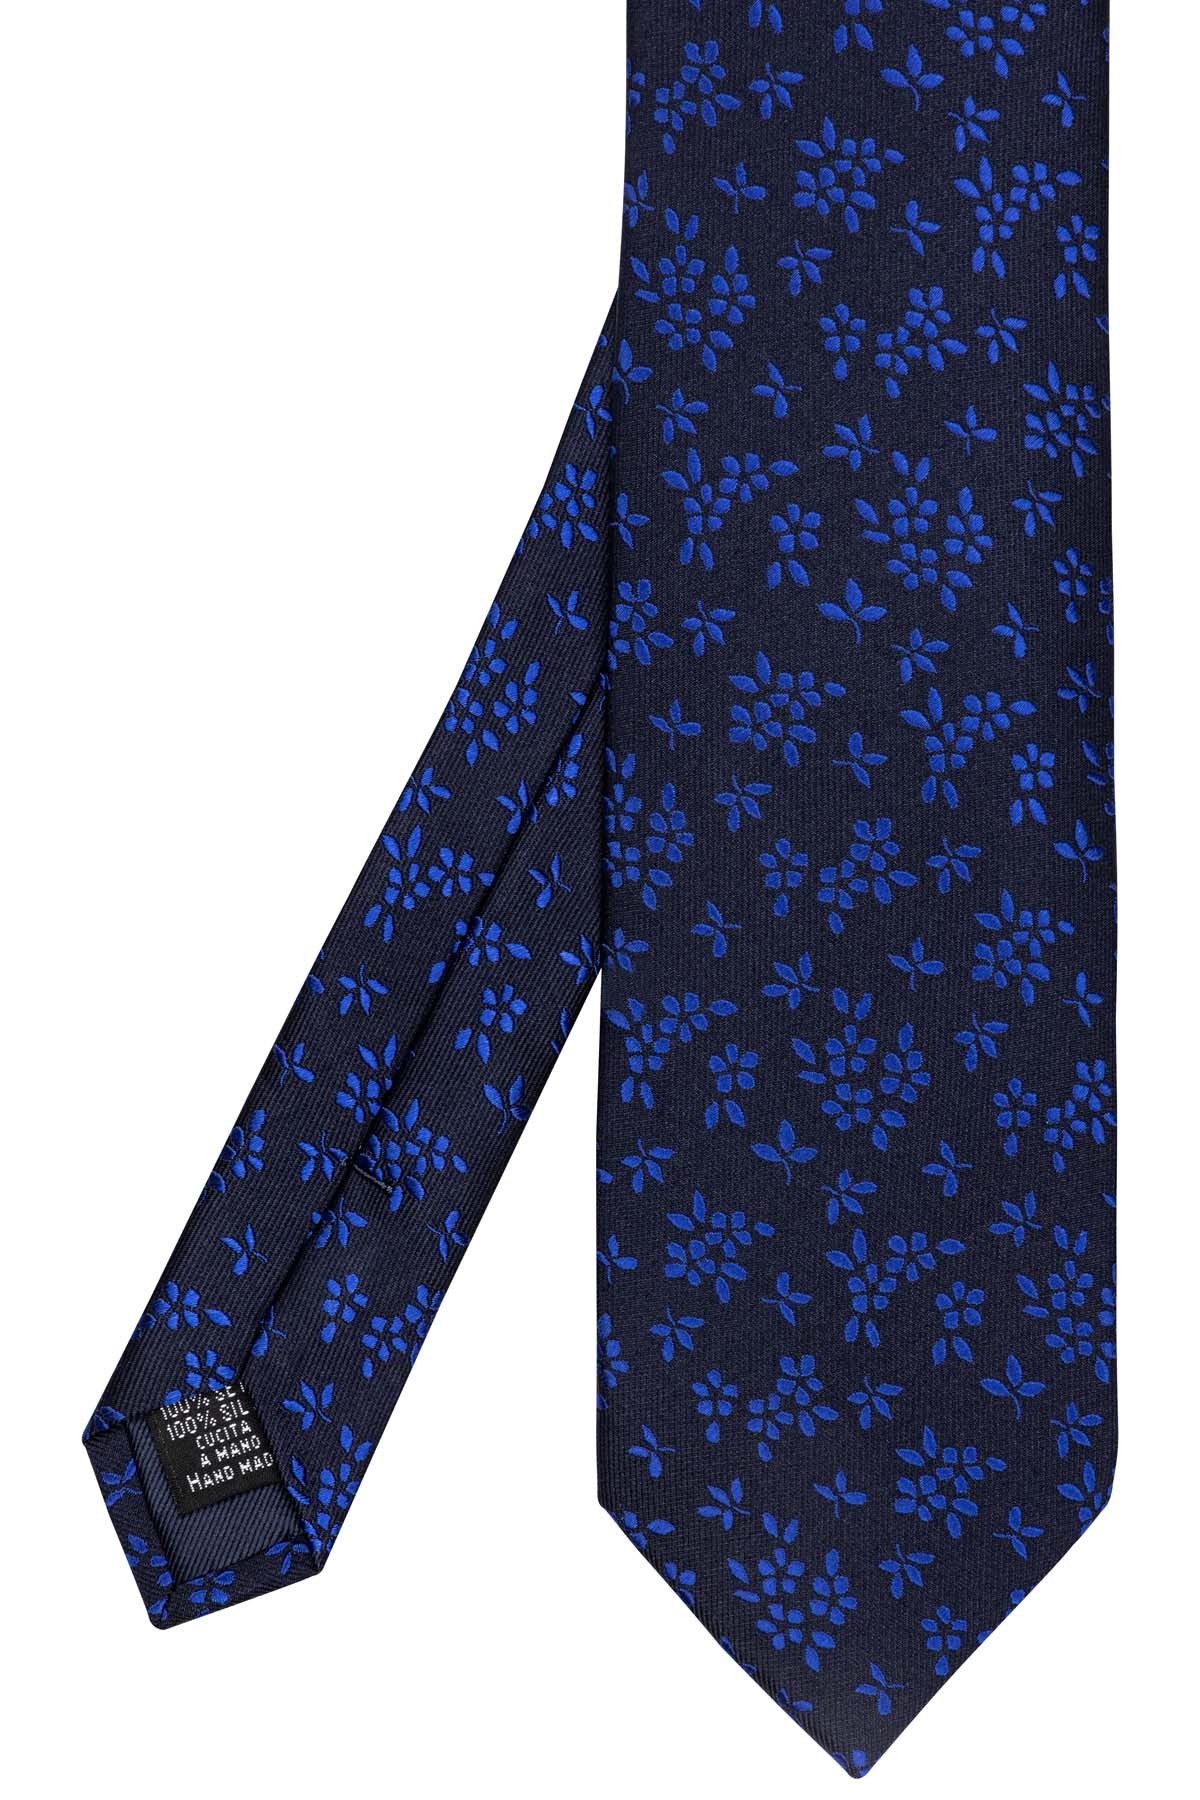 cravate en soie bleu marine avec fleurs bleues